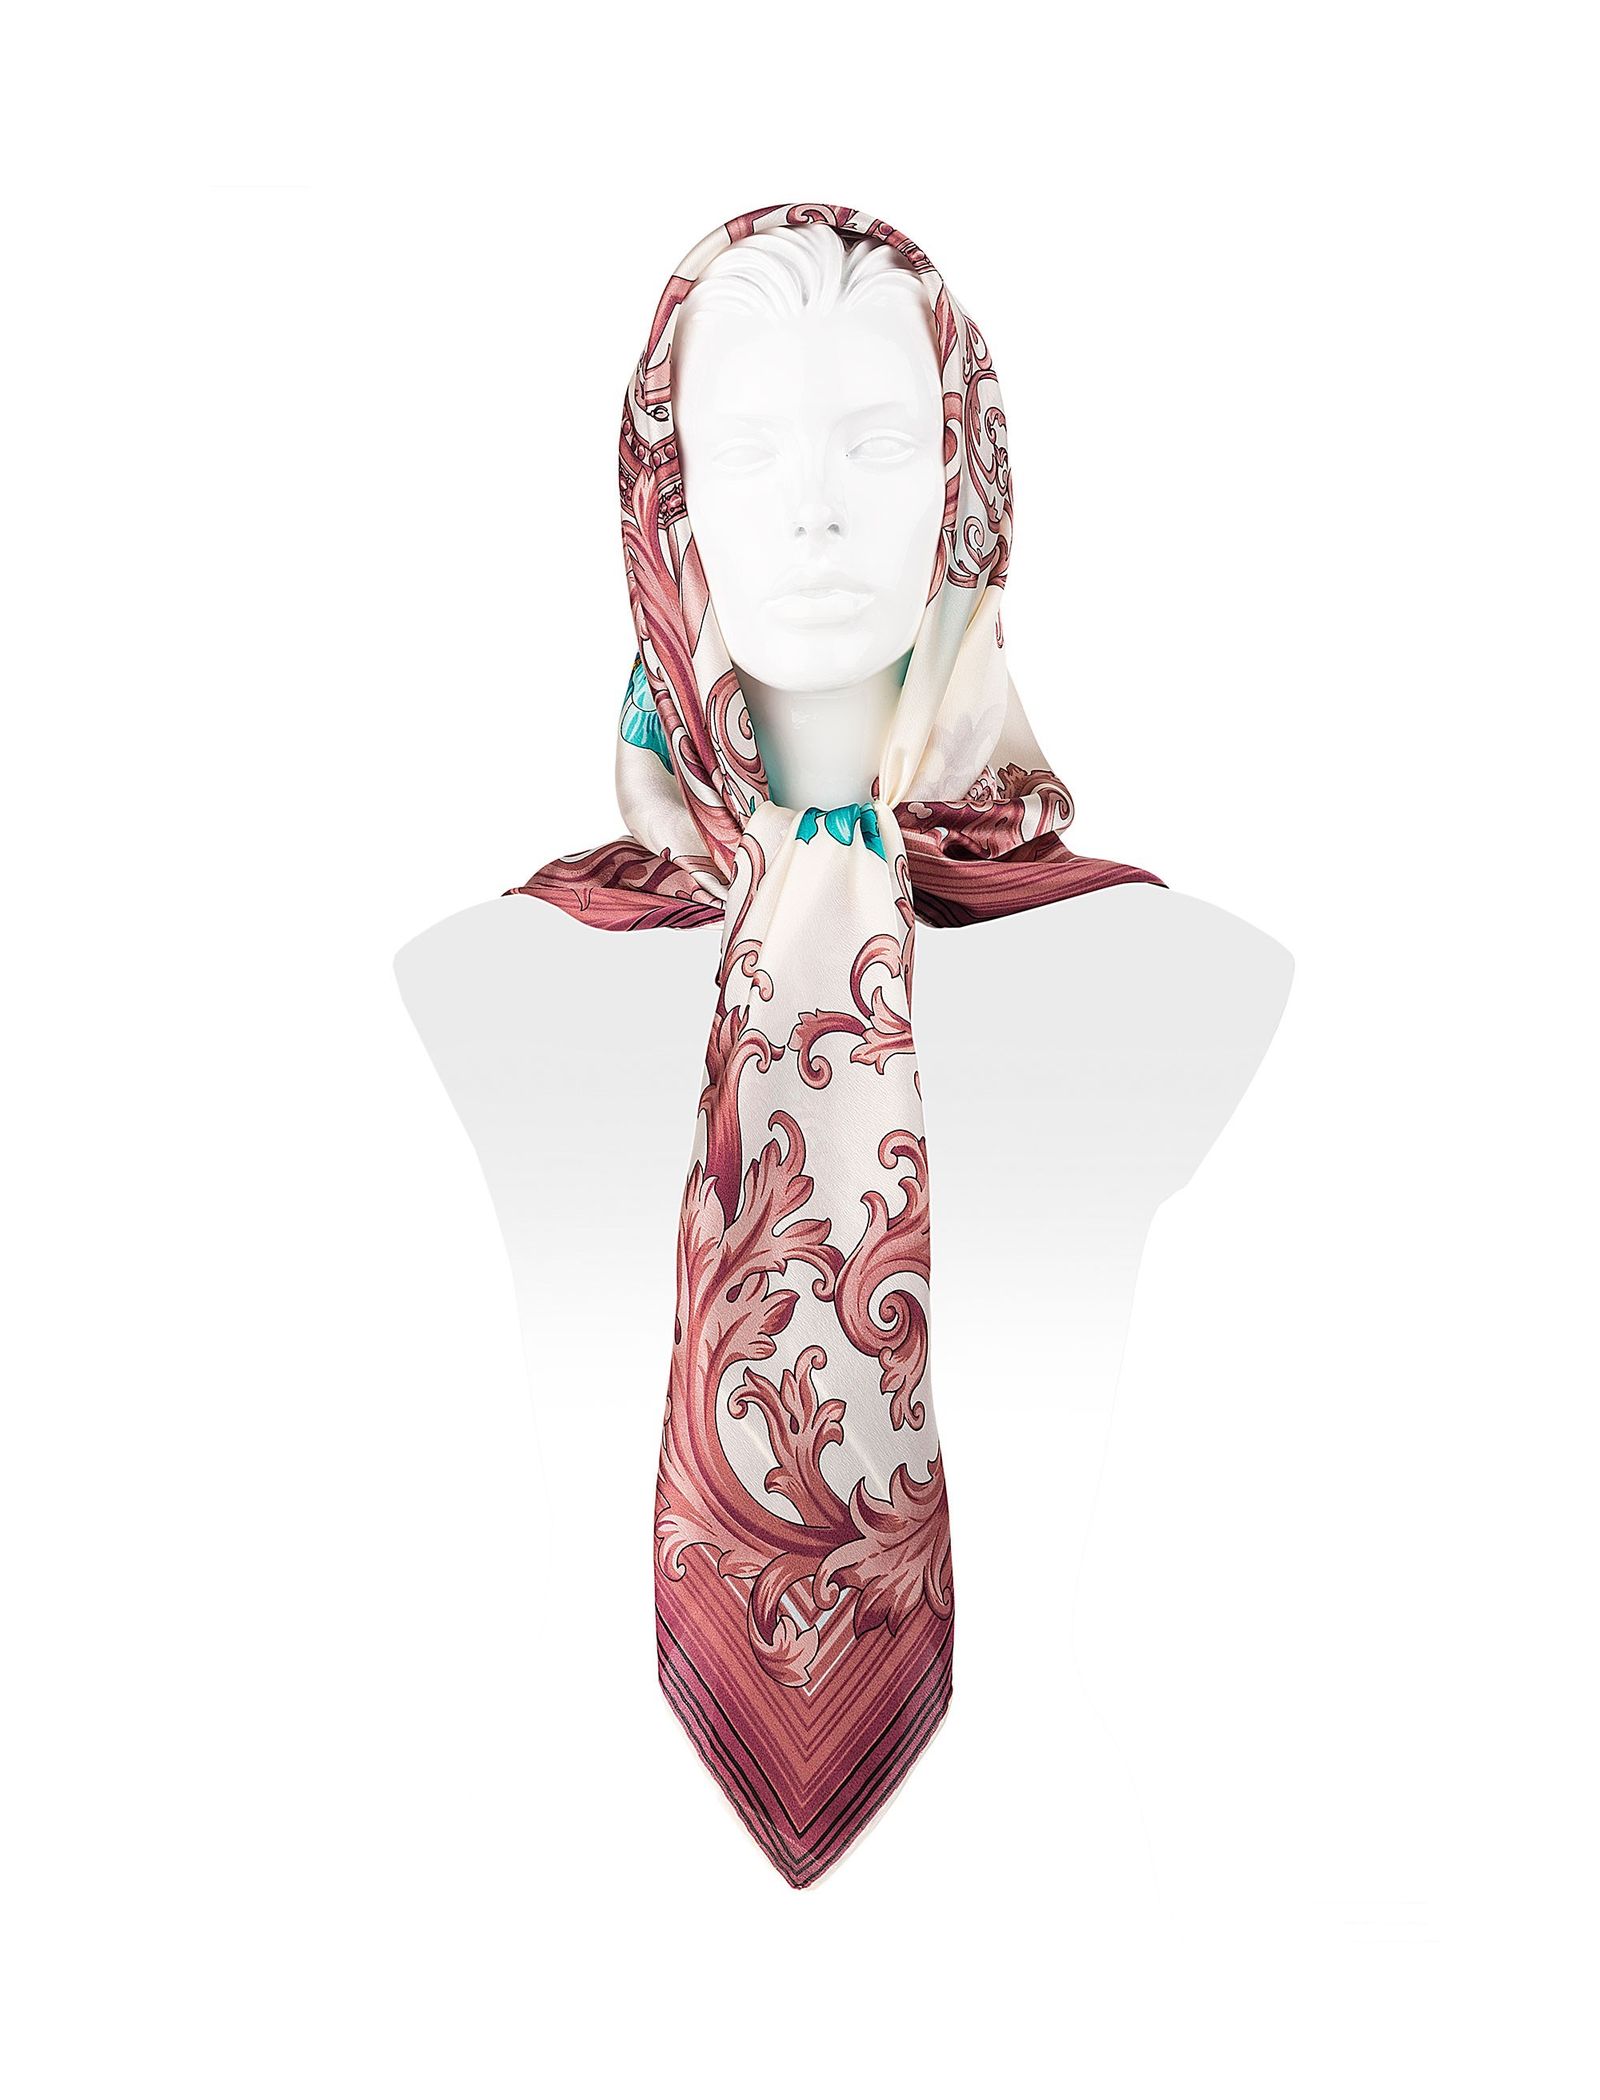 روسری ابریشمی زنانه - رزتی - سفيد و صورتي - 1